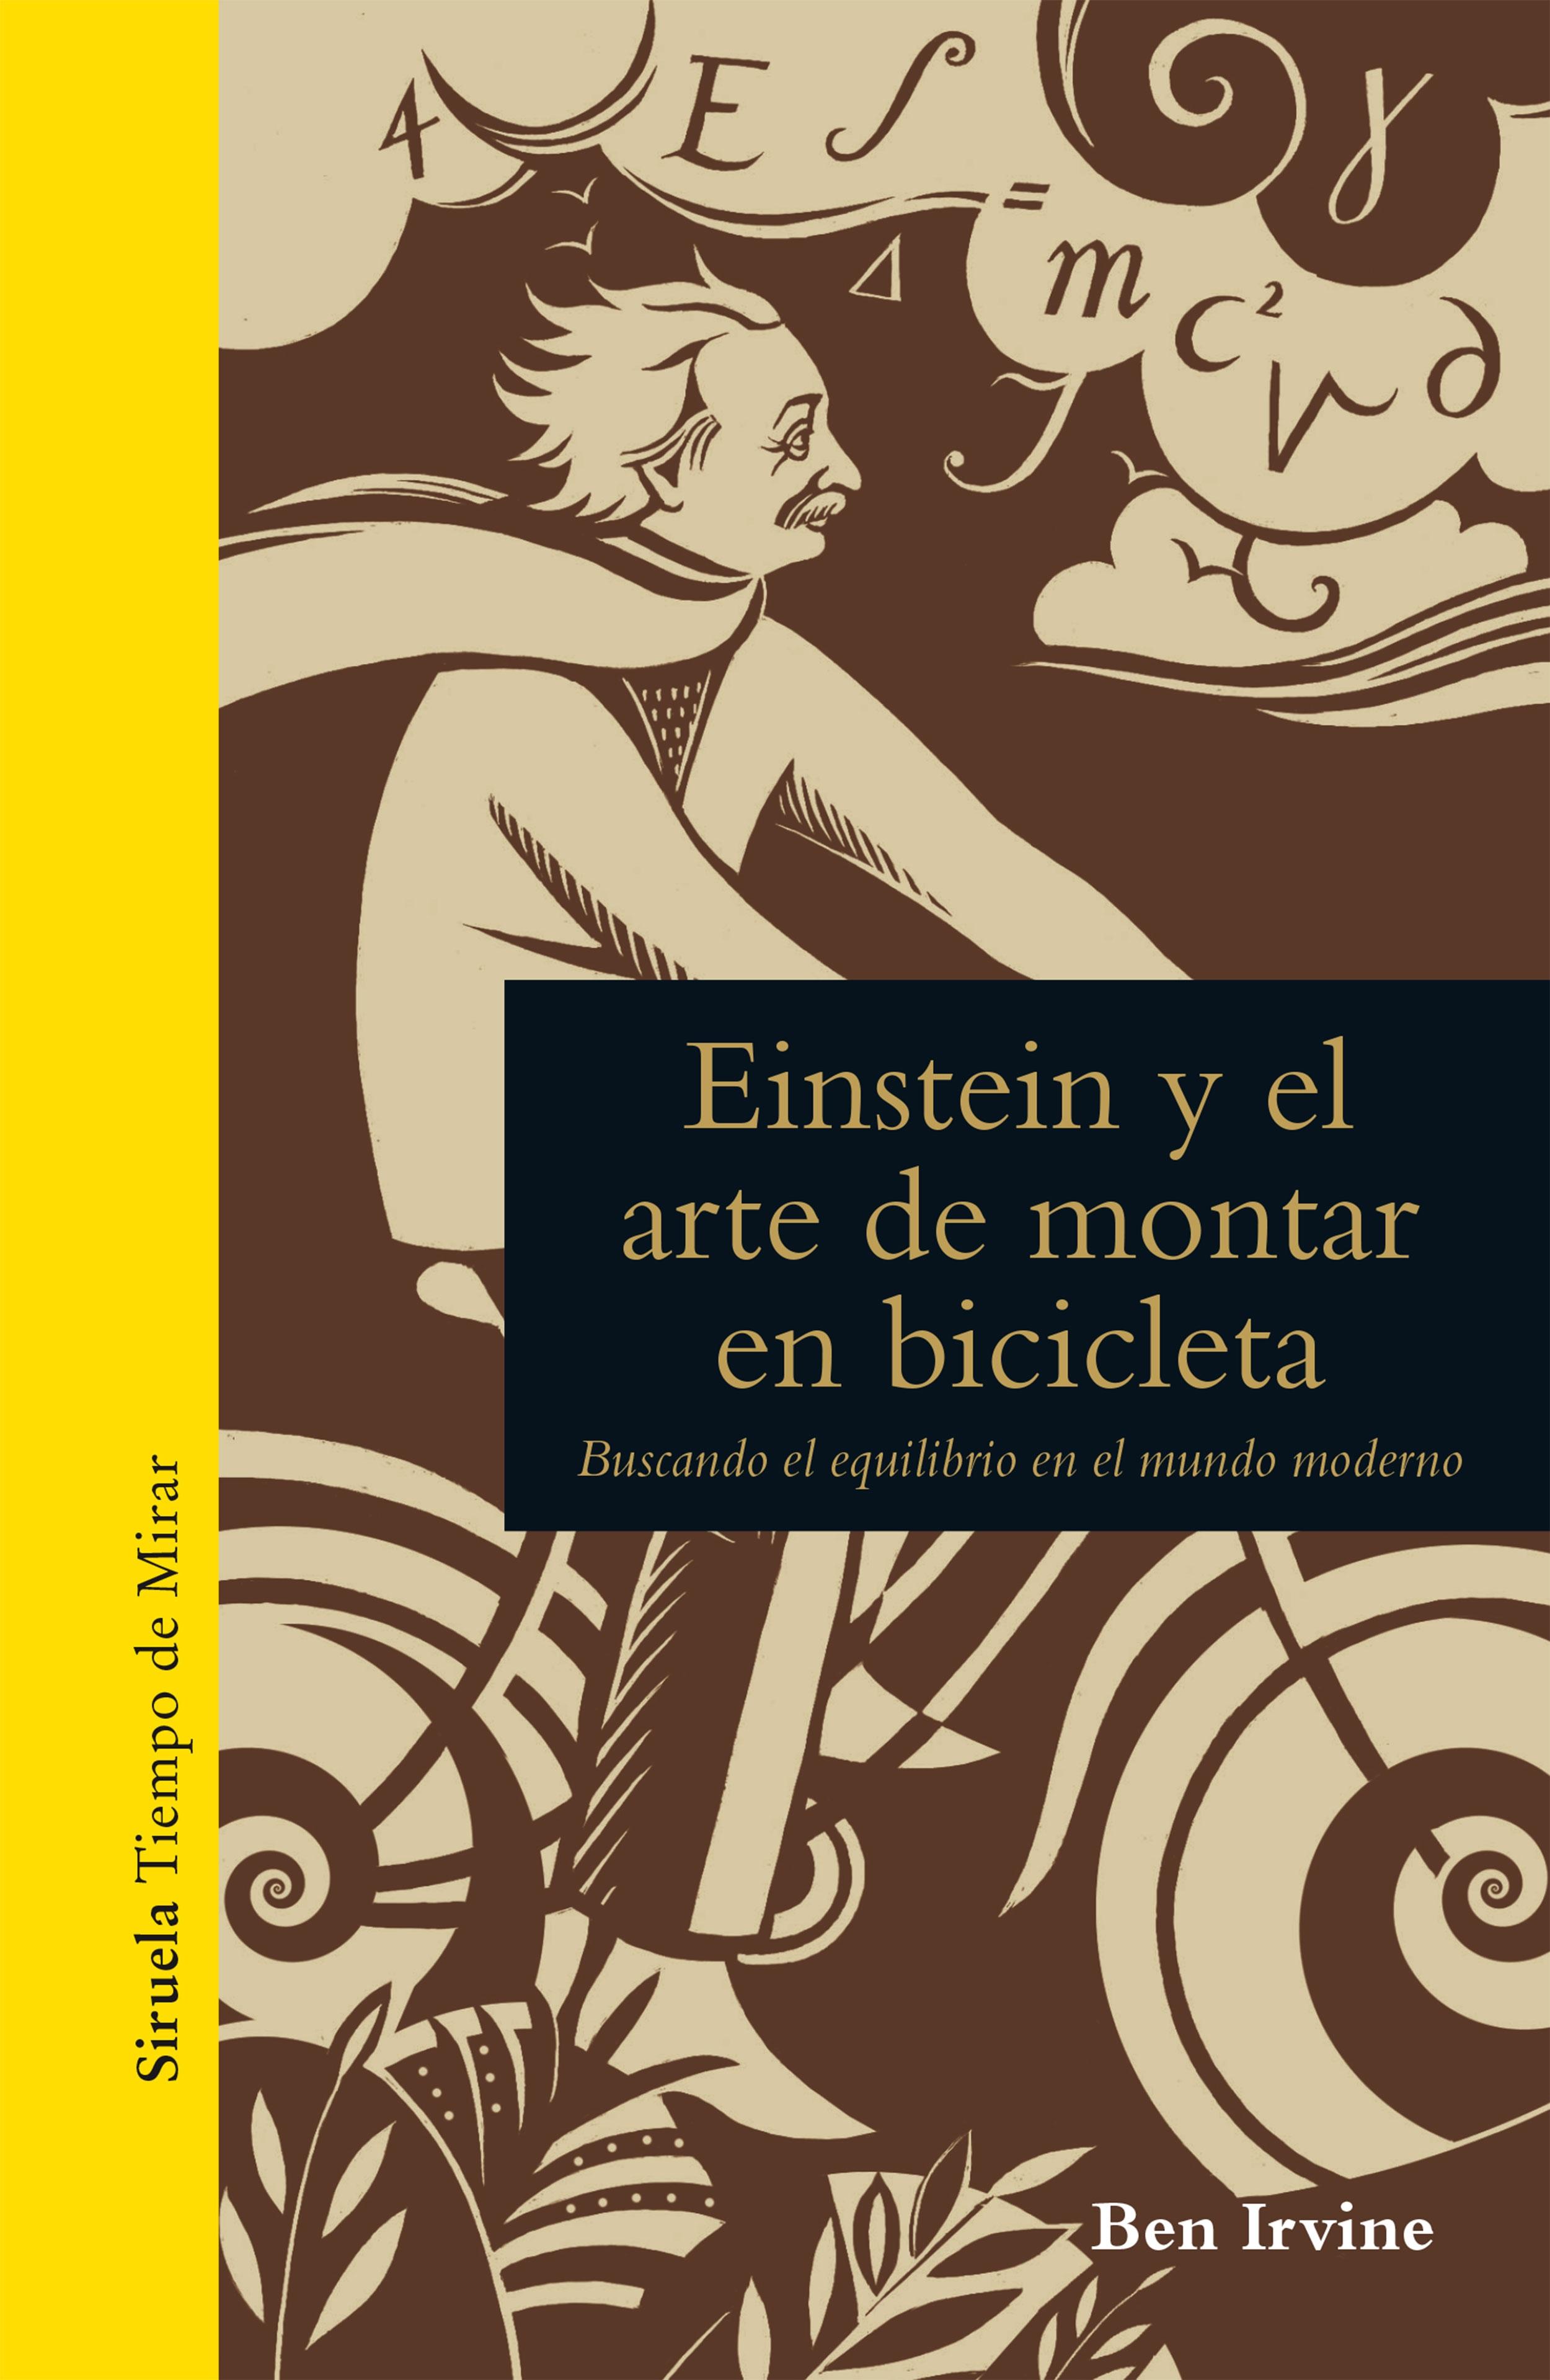 EINSTEIN Y EL ARTE DE MONTAR EN BICICLETA "BUSCANDO EL EQUILIBRIO EN EL MUNDO MODERNO". 